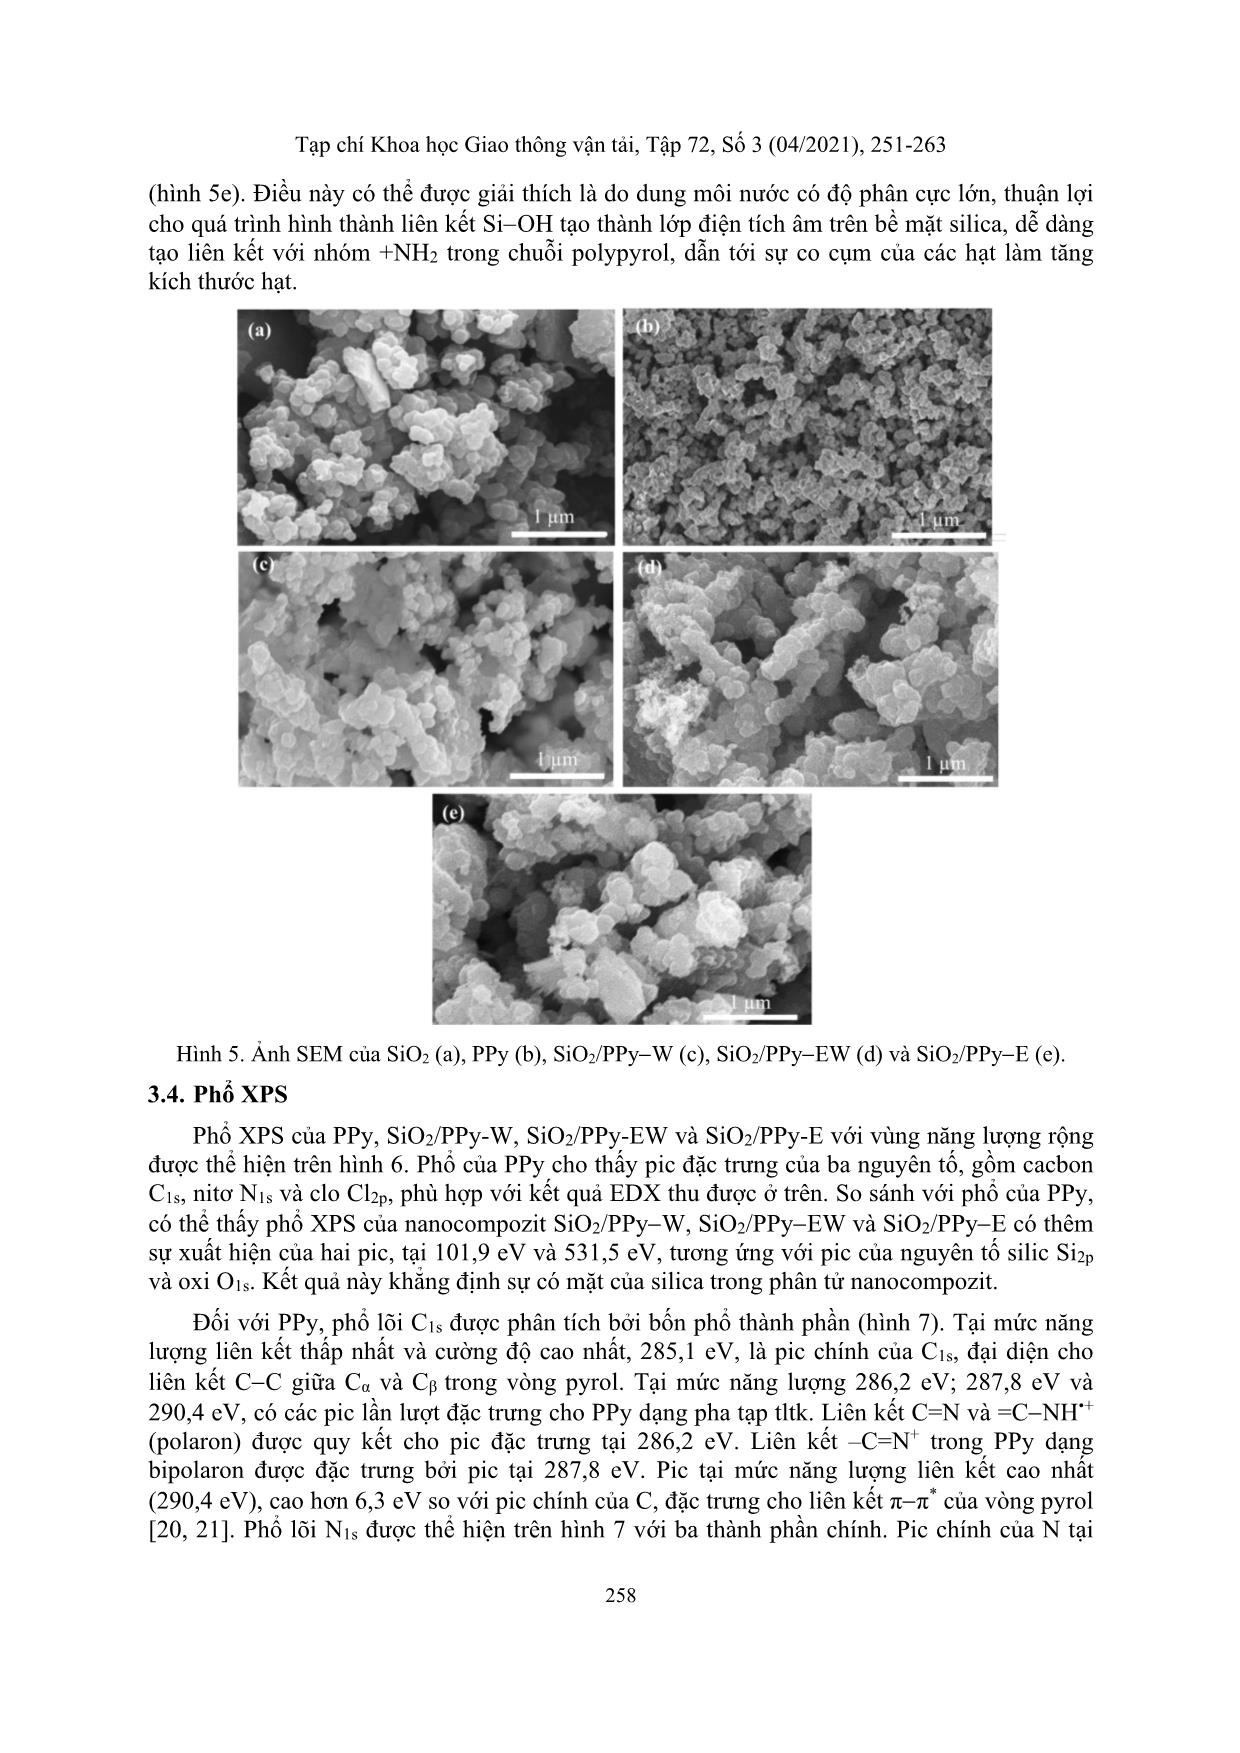 Nghiên cứu sự ảnh hưởng của dung môi đến quá trình tổng hợp nano composite SiO₂/PPY trang 8